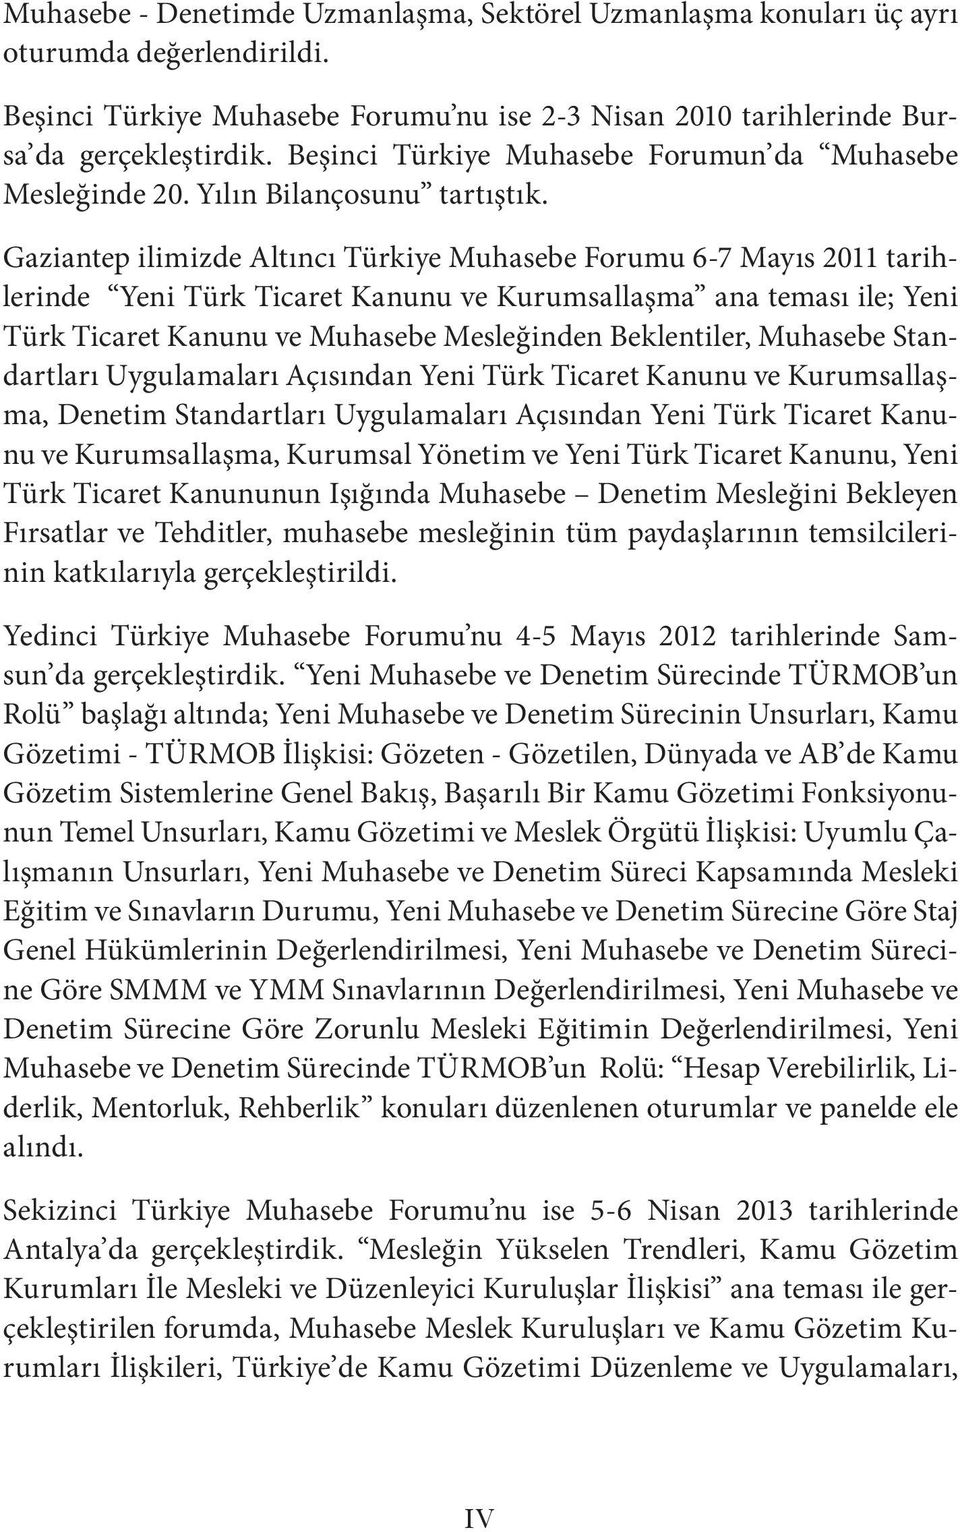 Gaziantep ilimizde Altıncı Türkiye Muhasebe Forumu 6-7 Mayıs 2011 tarihlerinde Yeni Türk Ticaret Kanunu ve Kurumsallaşma ana teması ile; Yeni Türk Ticaret Kanunu ve Muhasebe Mesleğinden Beklentiler,